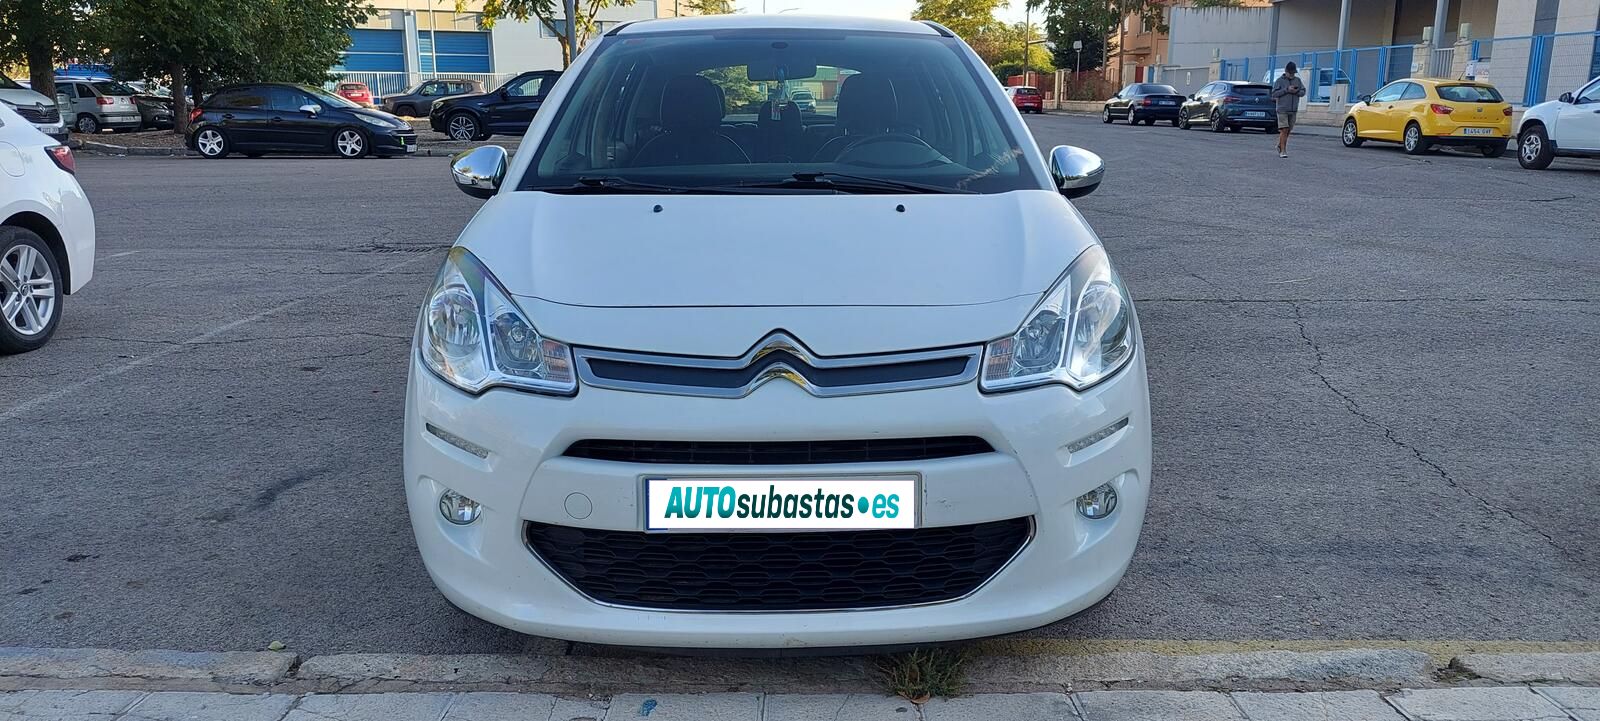 Array Citroën C3 2013 Diésel por 8.647€ en Guadalajara